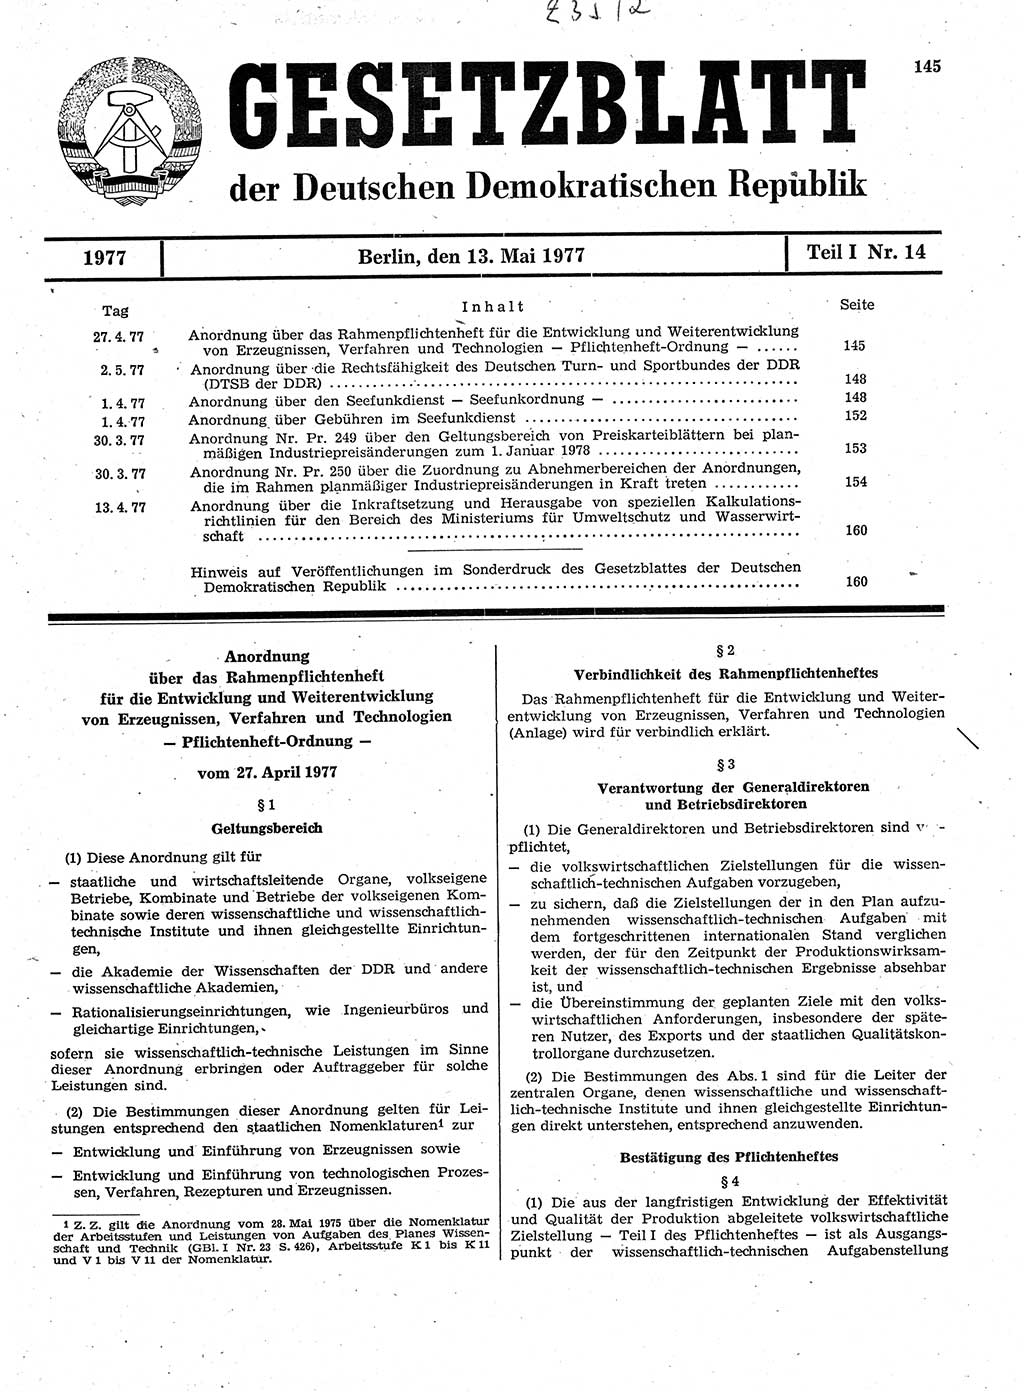 Gesetzblatt (GBl.) der Deutschen Demokratischen Republik (DDR) Teil Ⅰ 1977, Seite 145 (GBl. DDR Ⅰ 1977, S. 145)